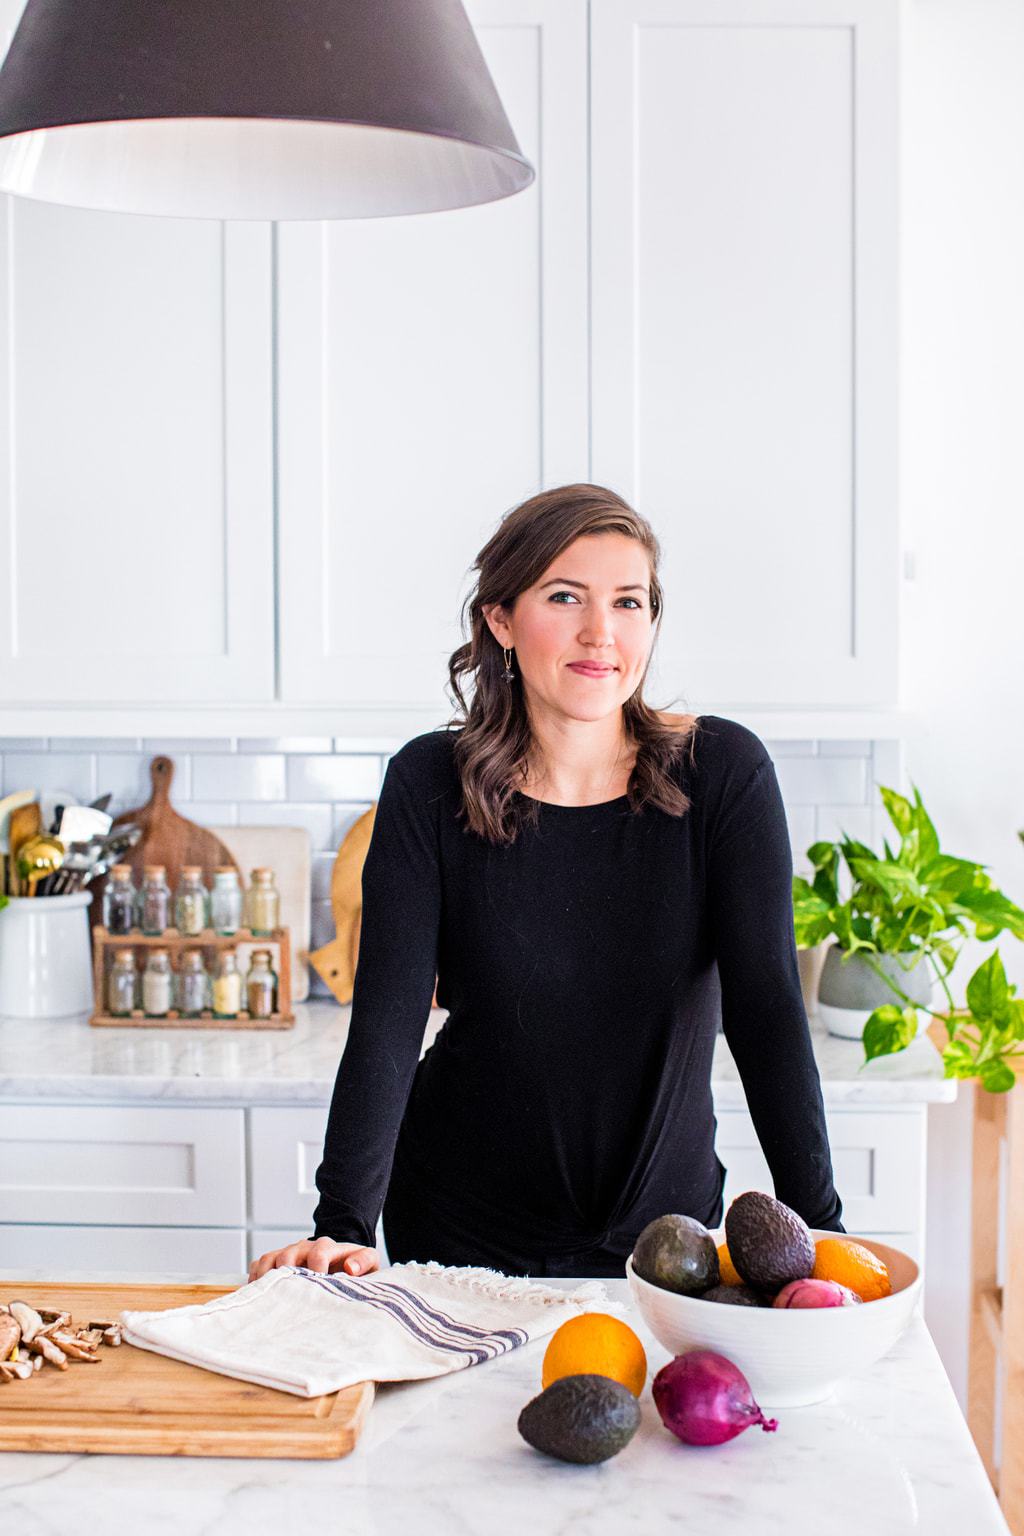 Kate Kordsmeier, a woman wearing black in a white kitchen.